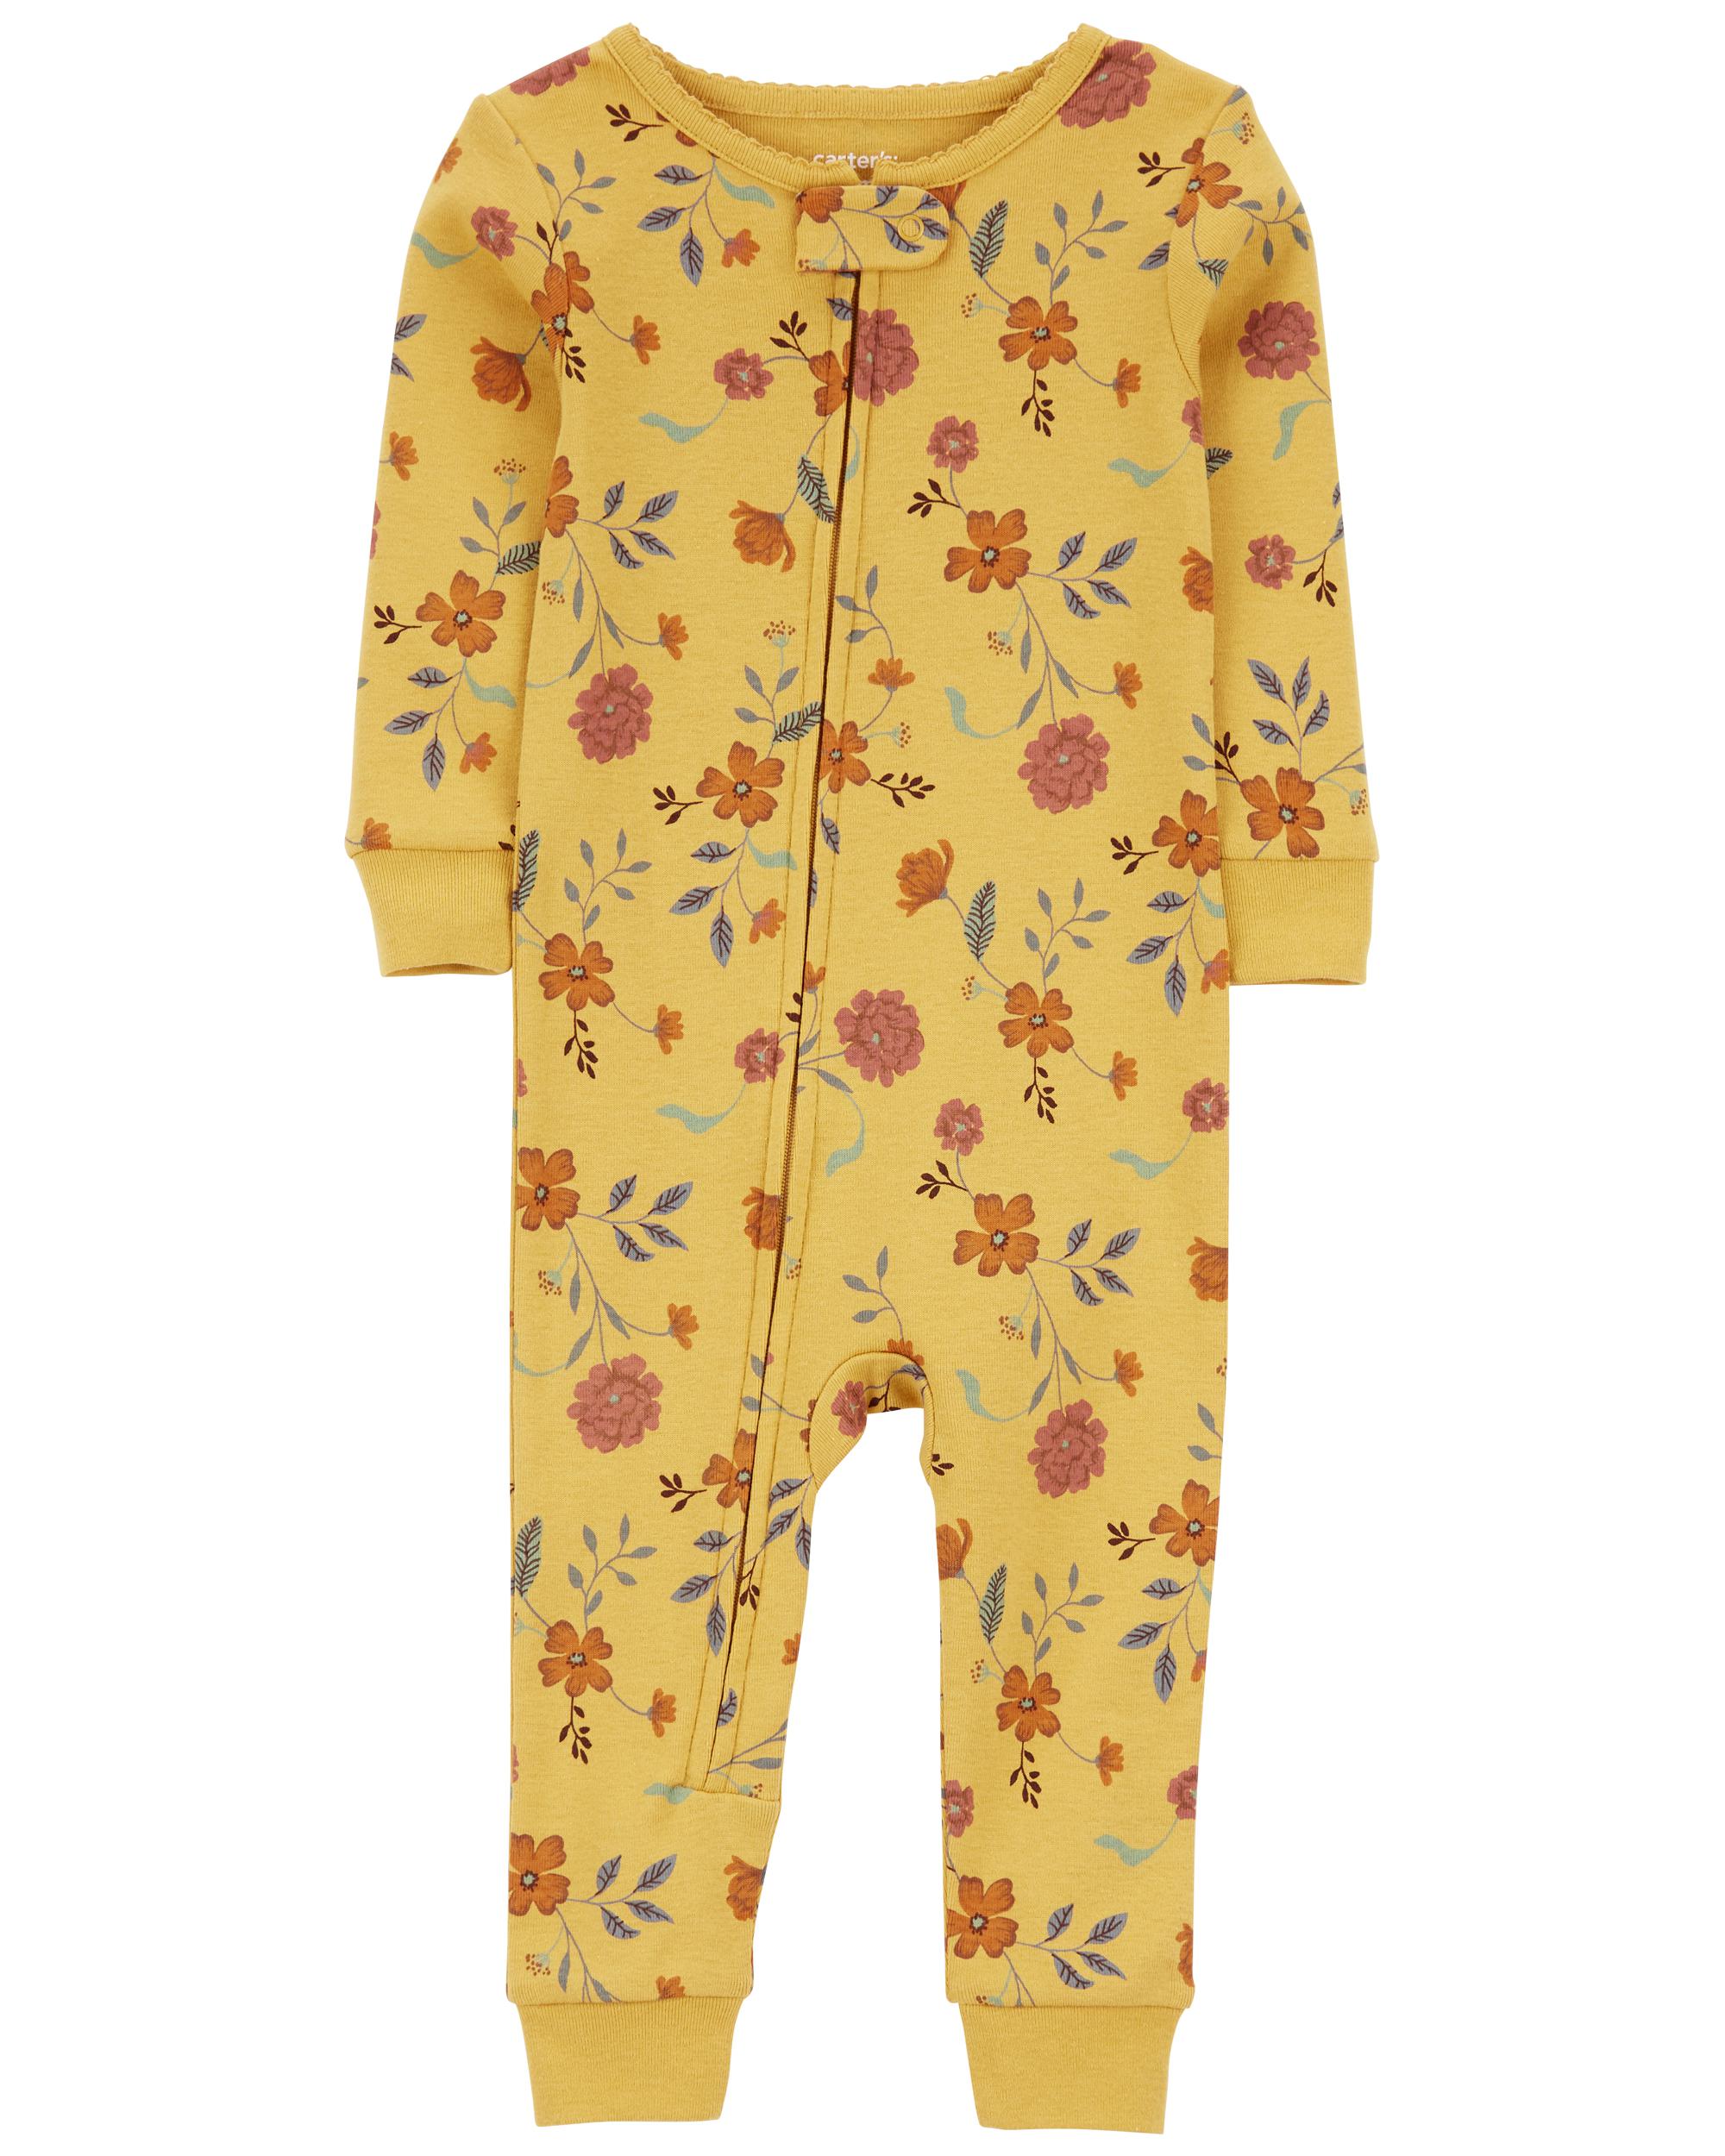 Toddler Girls 1-Piece Footless Pyjamas